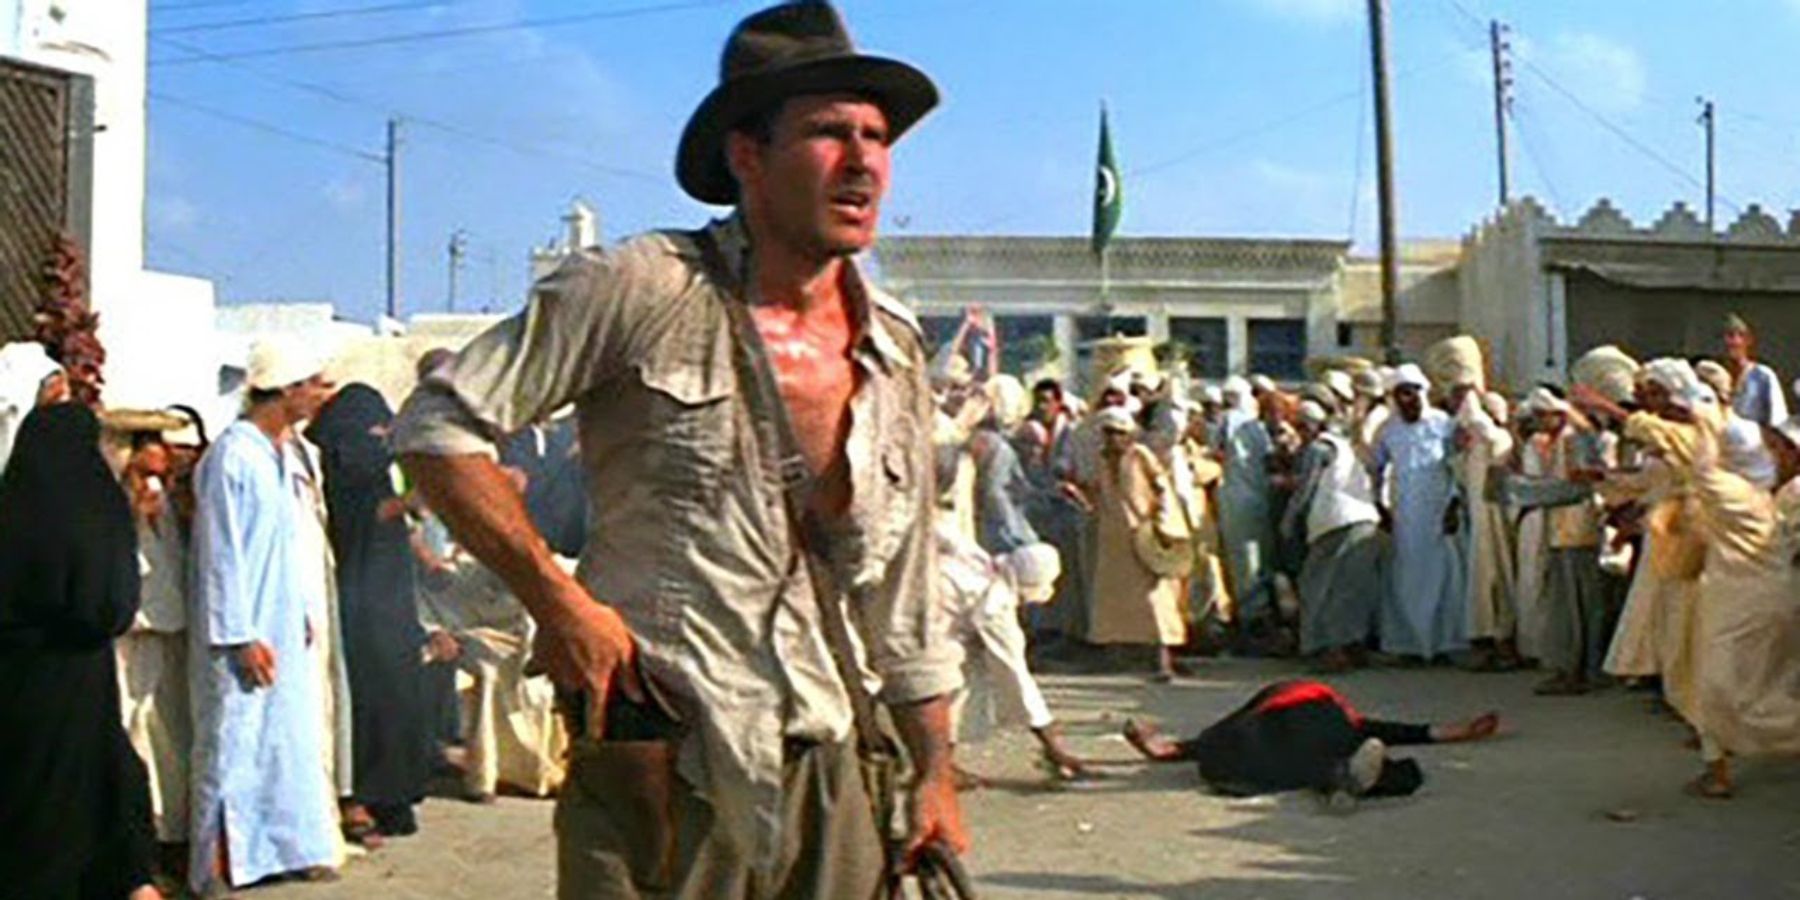 Indiana Jones steekt zijn geweer in de schede in Indiana Jones: Raiders of the Lost Ark